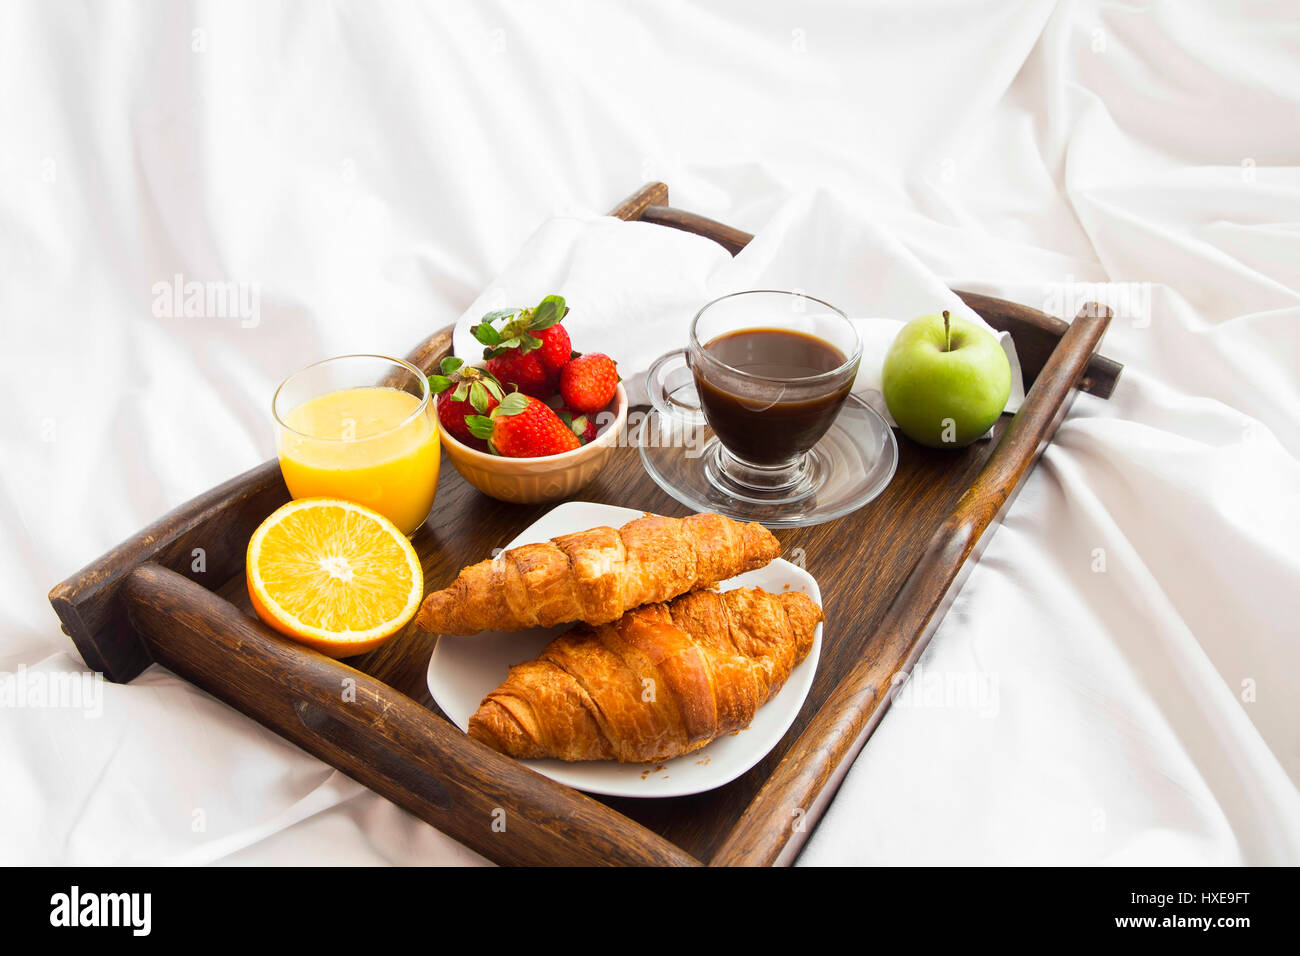 https://c8.alamy.com/compfr/hxe9ft/repas-petit-dejeuner-au-lit-sur-un-plateau-en-bois-avec-du-cafe-des-croissants-et-des-fruits-hxe9ft.jpg